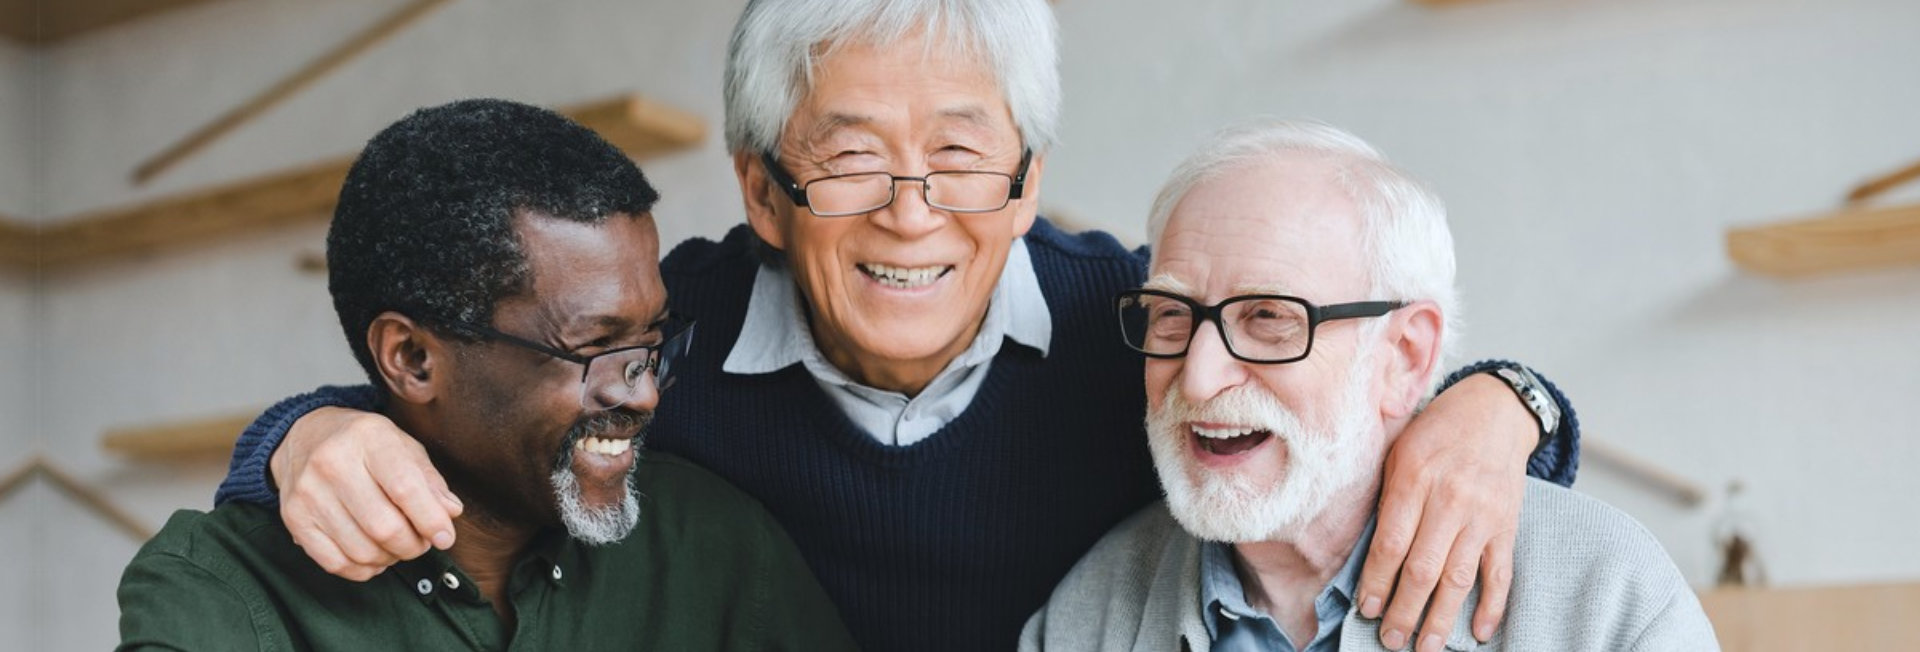 group of male senior man wearing eyeglasses smiling